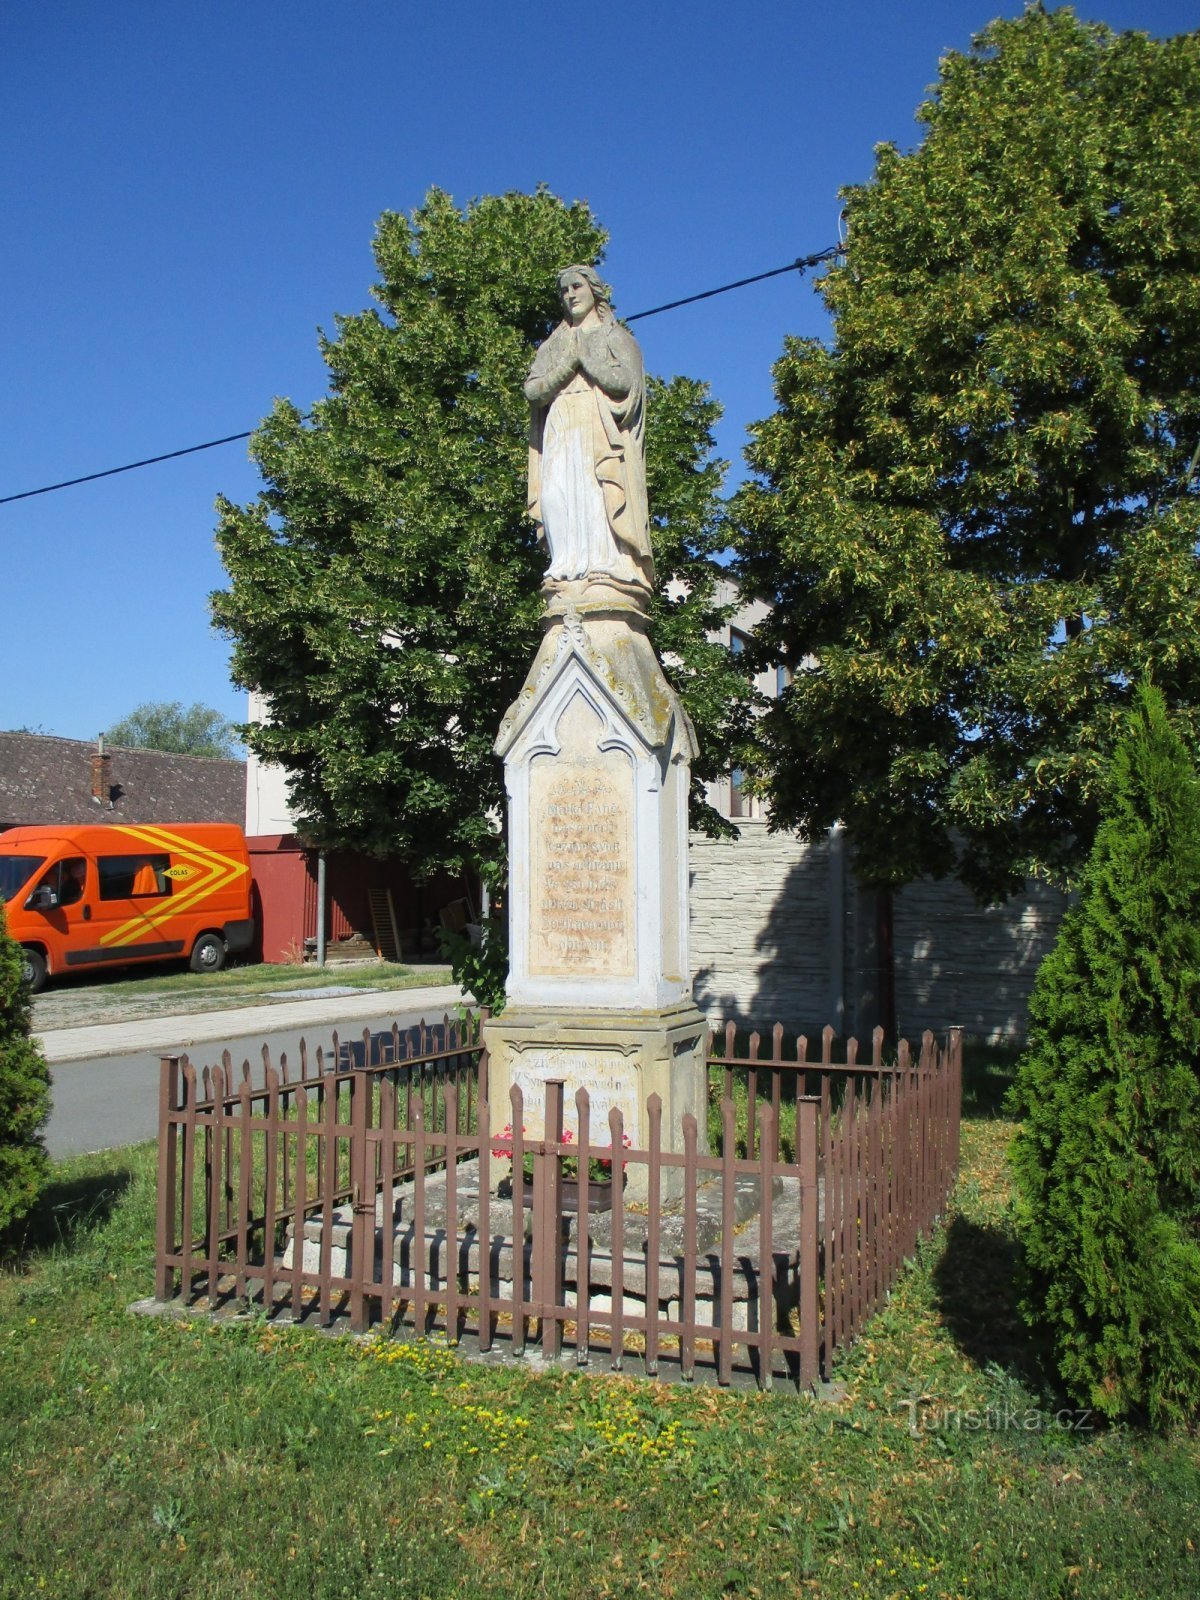 Estatua de la Virgen María (Podoliby, 29.6.2019/XNUMX/XNUMX)